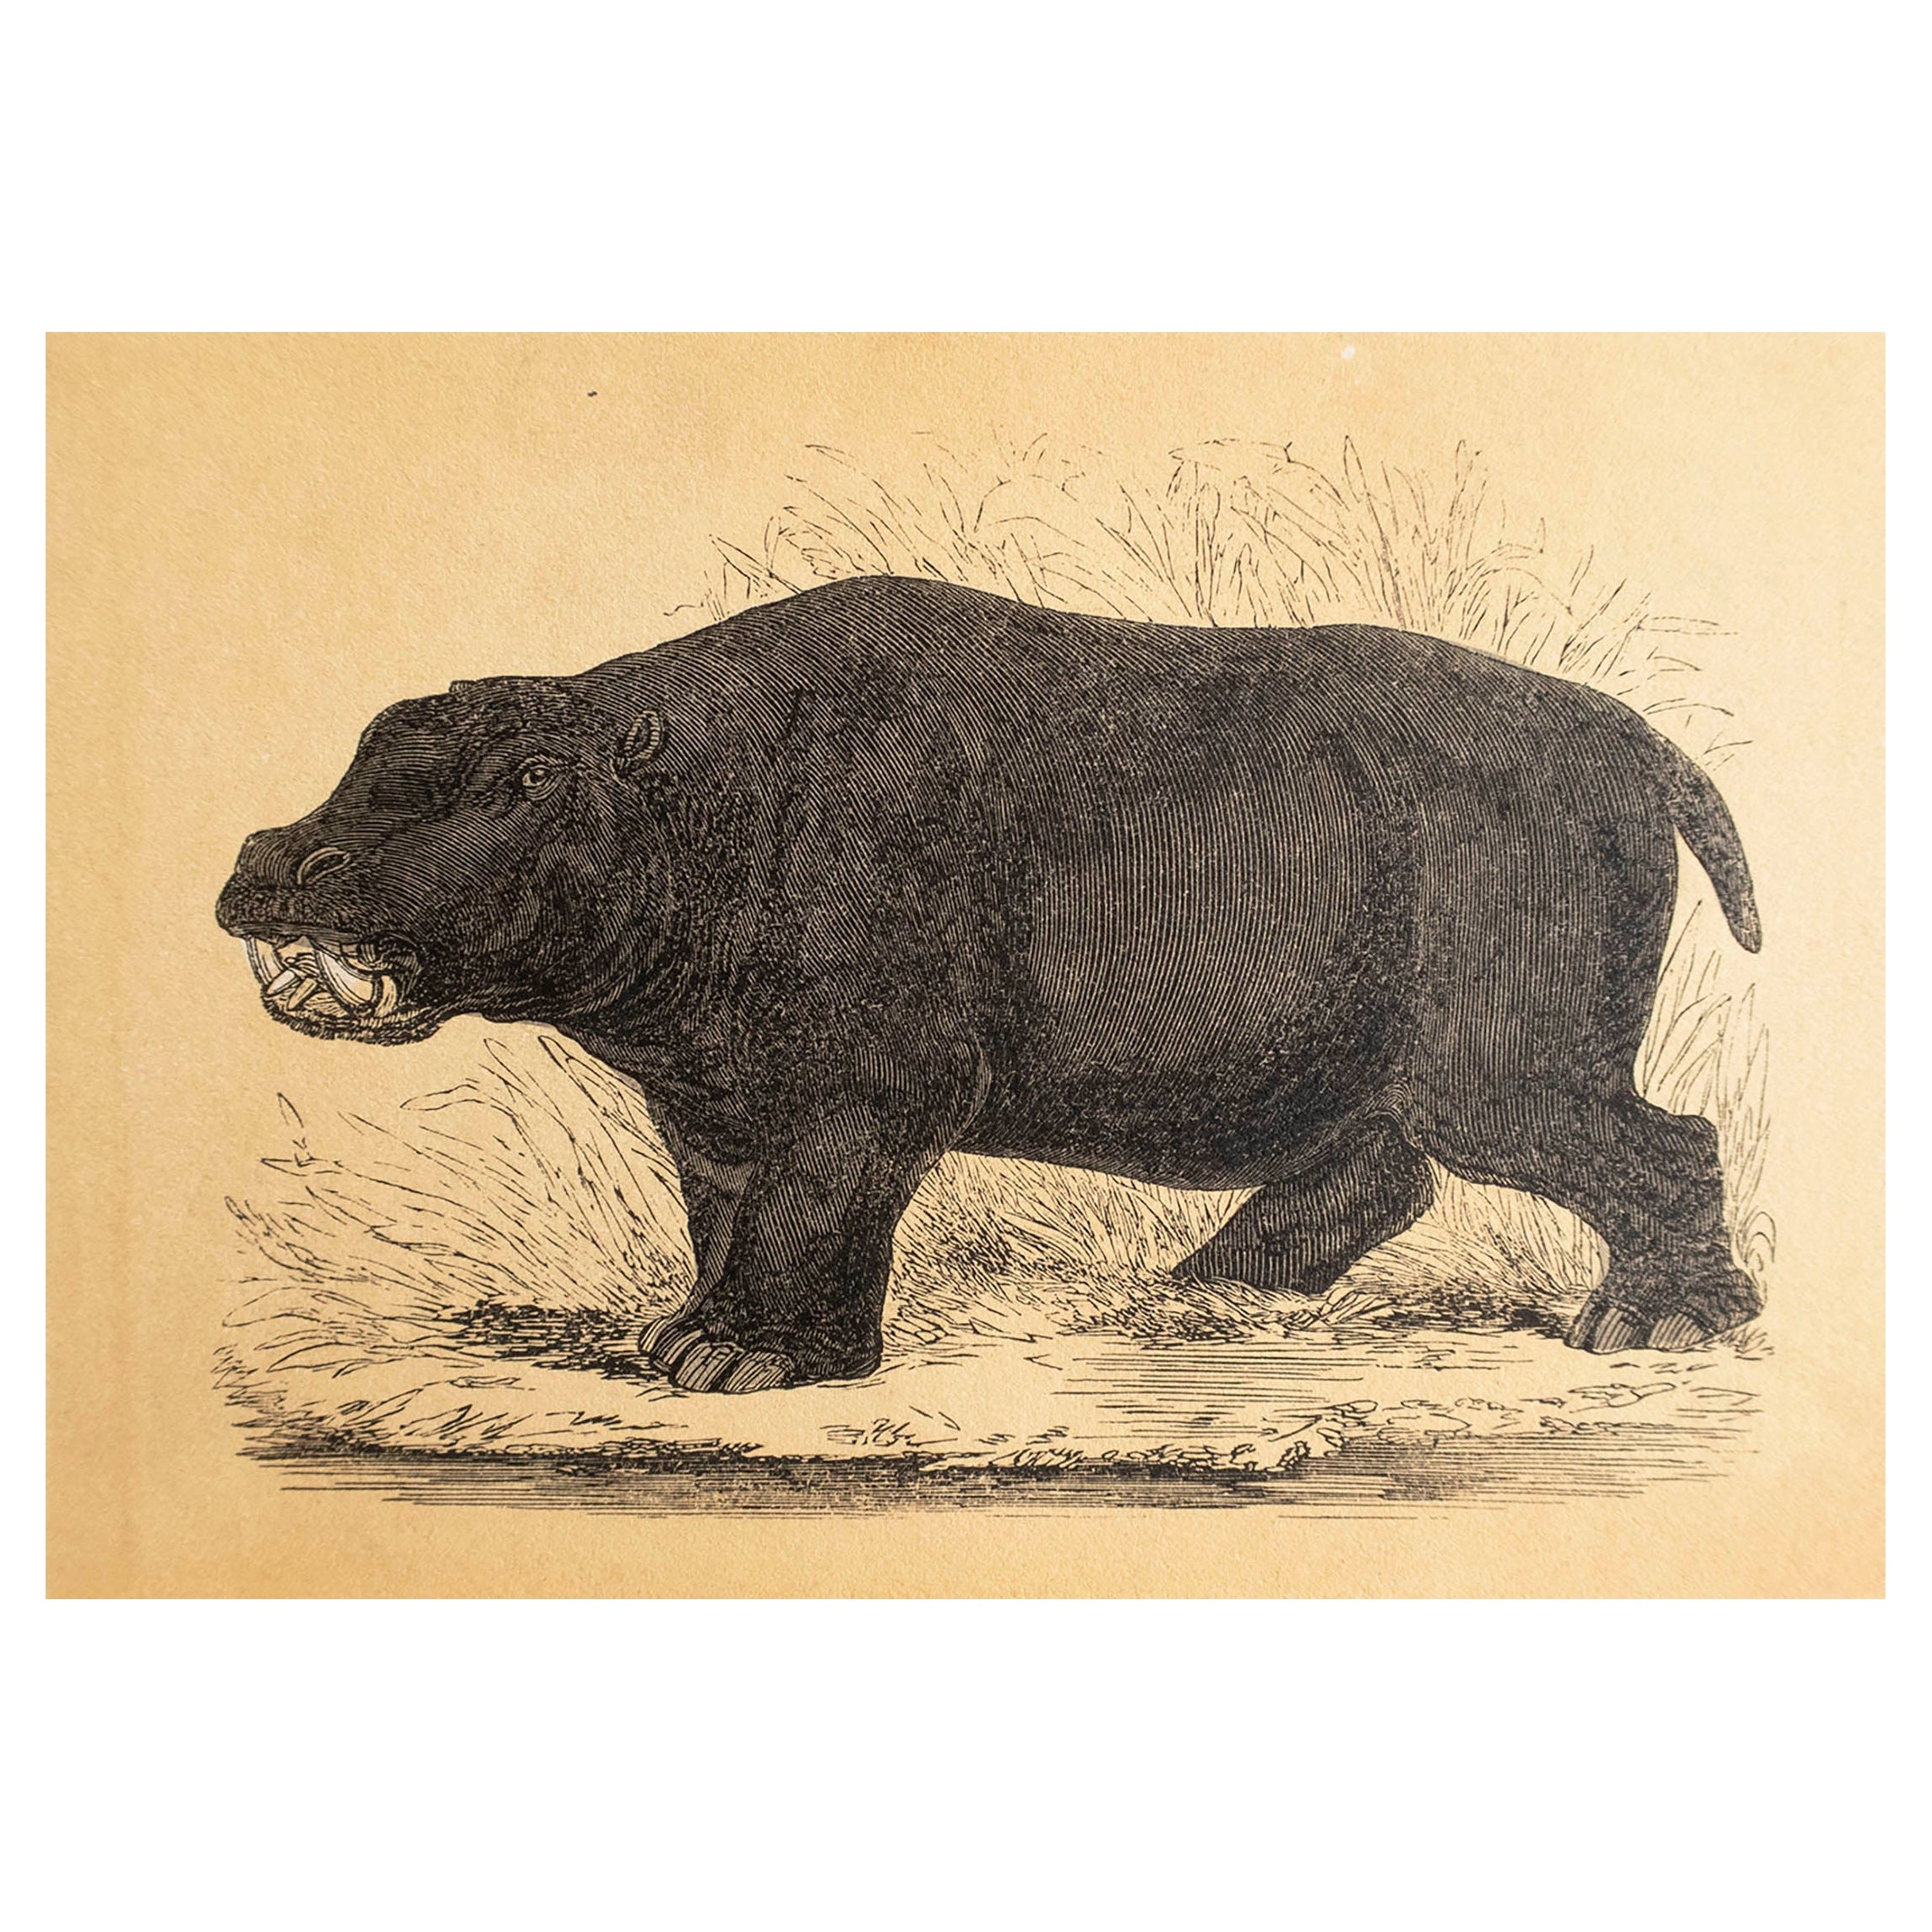  Original Antique Print of A Hippopotamus, circa 1850